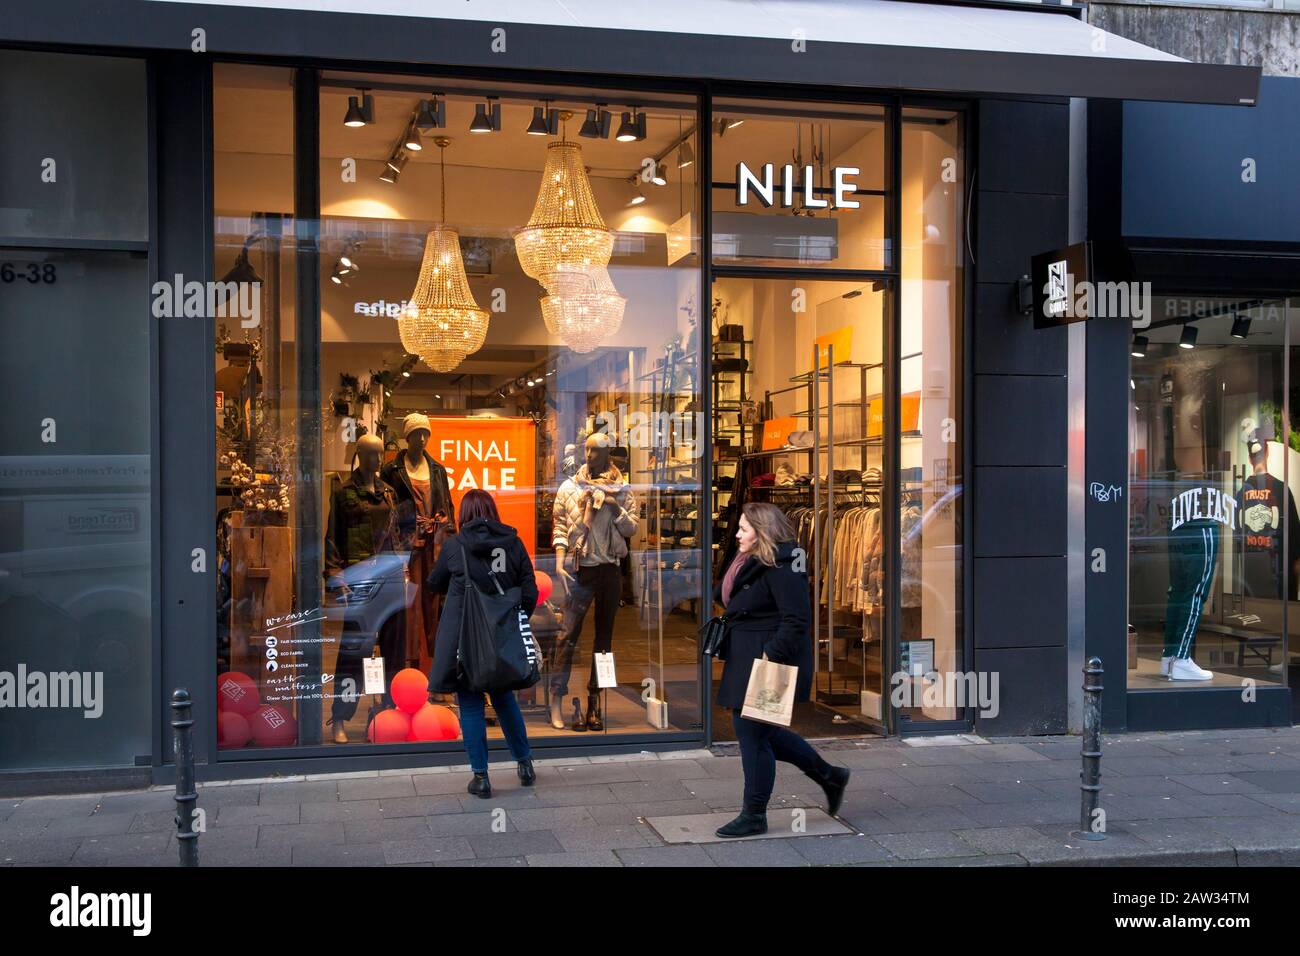 Tienda de moda Nilo en la calle comercial Ehrenstrasse, Colonia, Alemania. Modegeschaeft Nile en der Ehrenstrasse, Koeln, Deutschland. Foto de stock